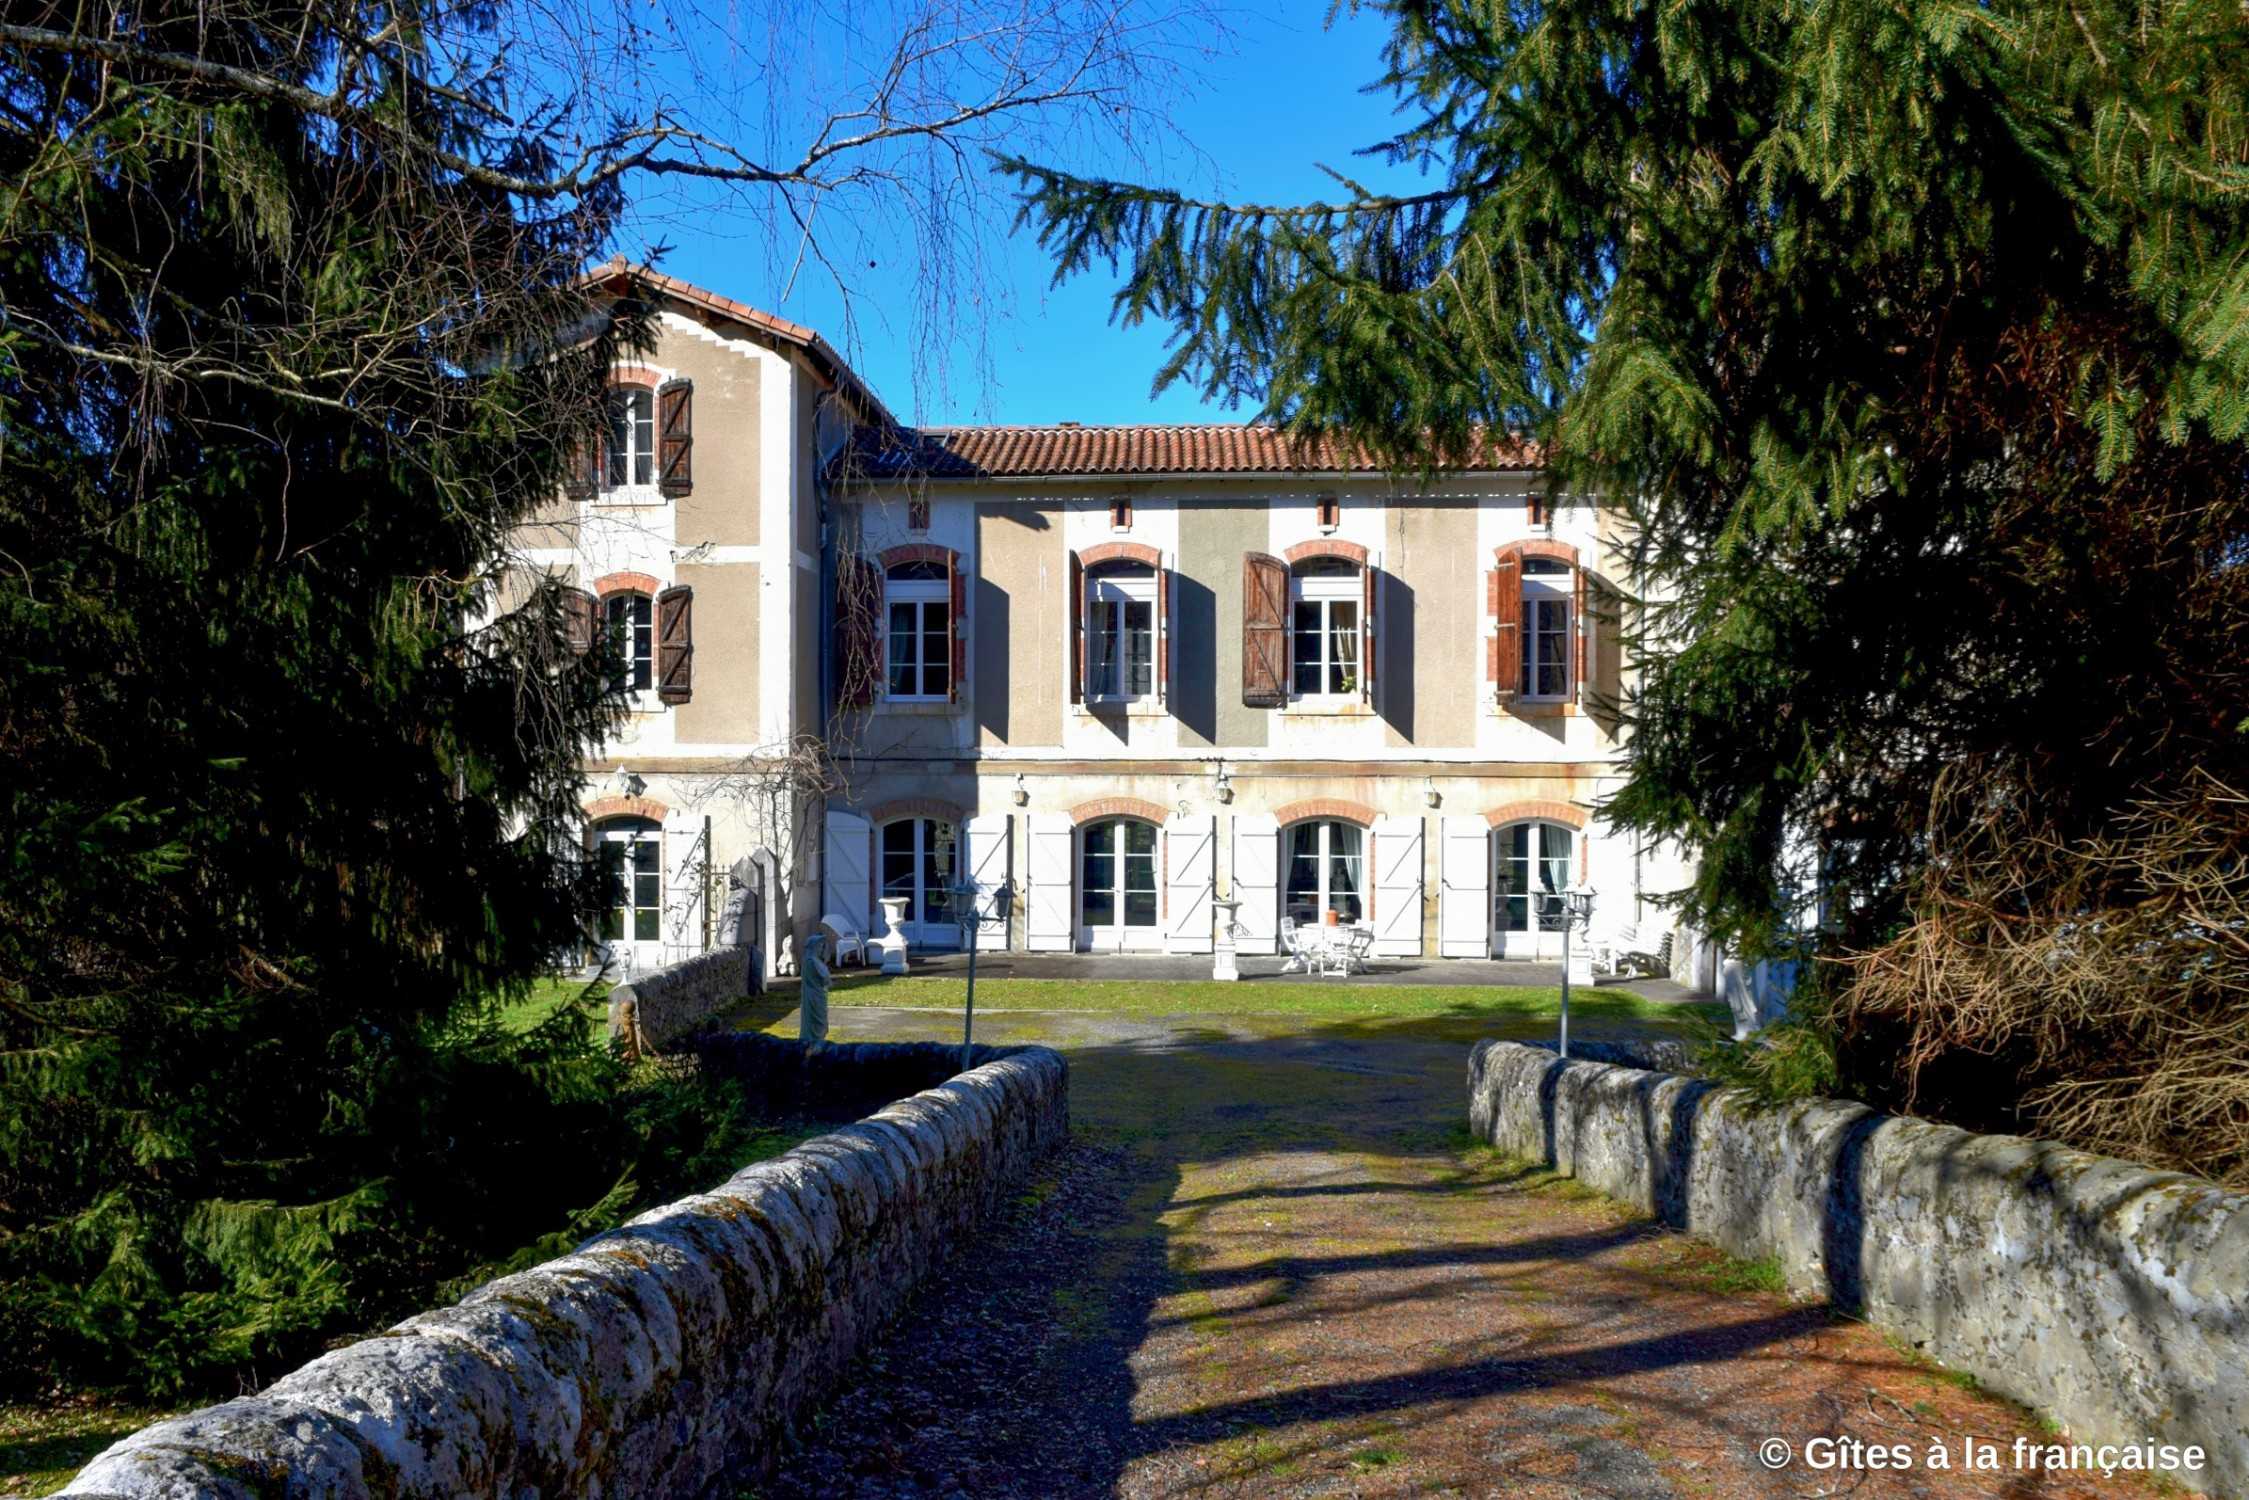 Images Historisch gebouw als vakantiehuis/B&B, Pyreneeën